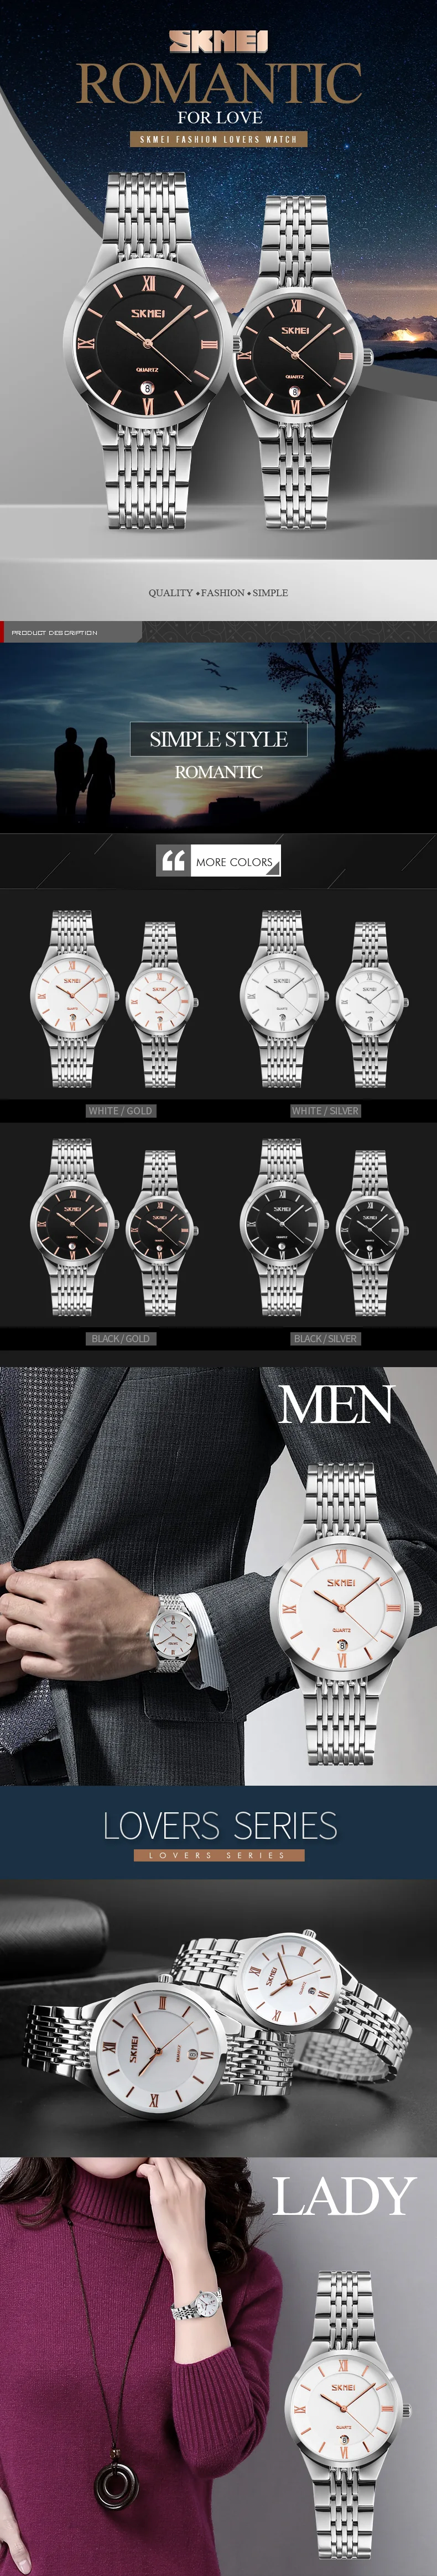 SKMEI роскошные женские/мужские парные часы из нержавеющей стали, простые элегантные водонепроницаемые часы с украшениями для влюбленных, подарки, Relogios Feminino